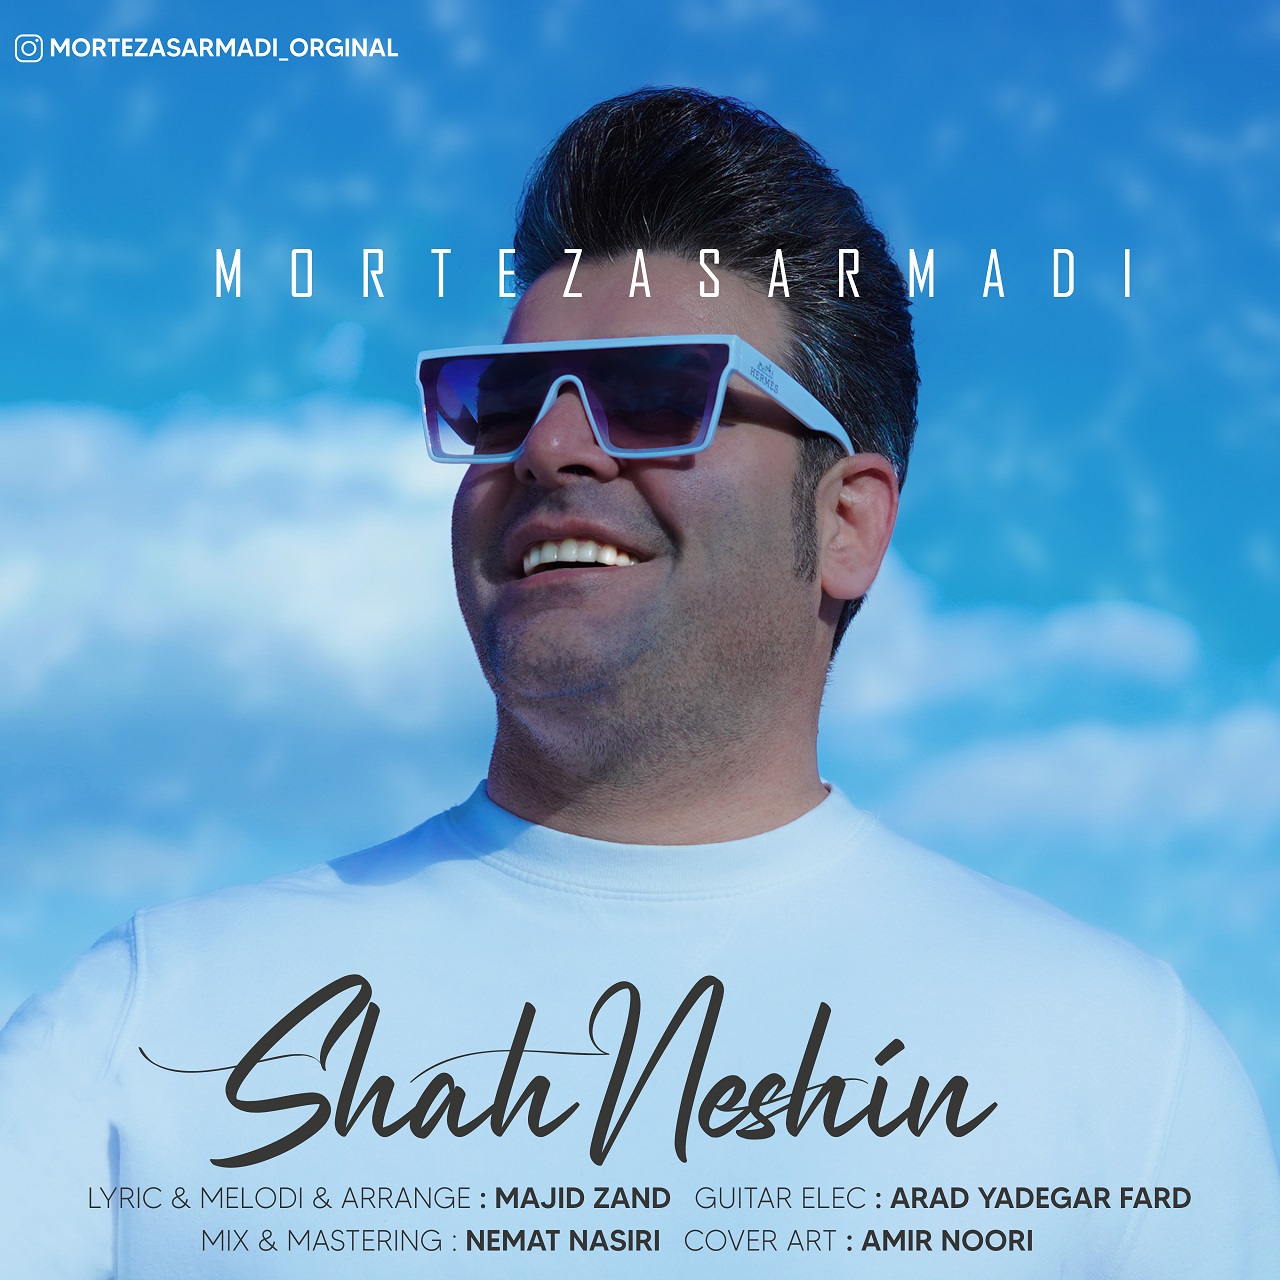  دانلود آهنگ جدید مرتضی سرمدی - شاه نشین | Download New Music By Morteza Sarmadi - Shah Neshin